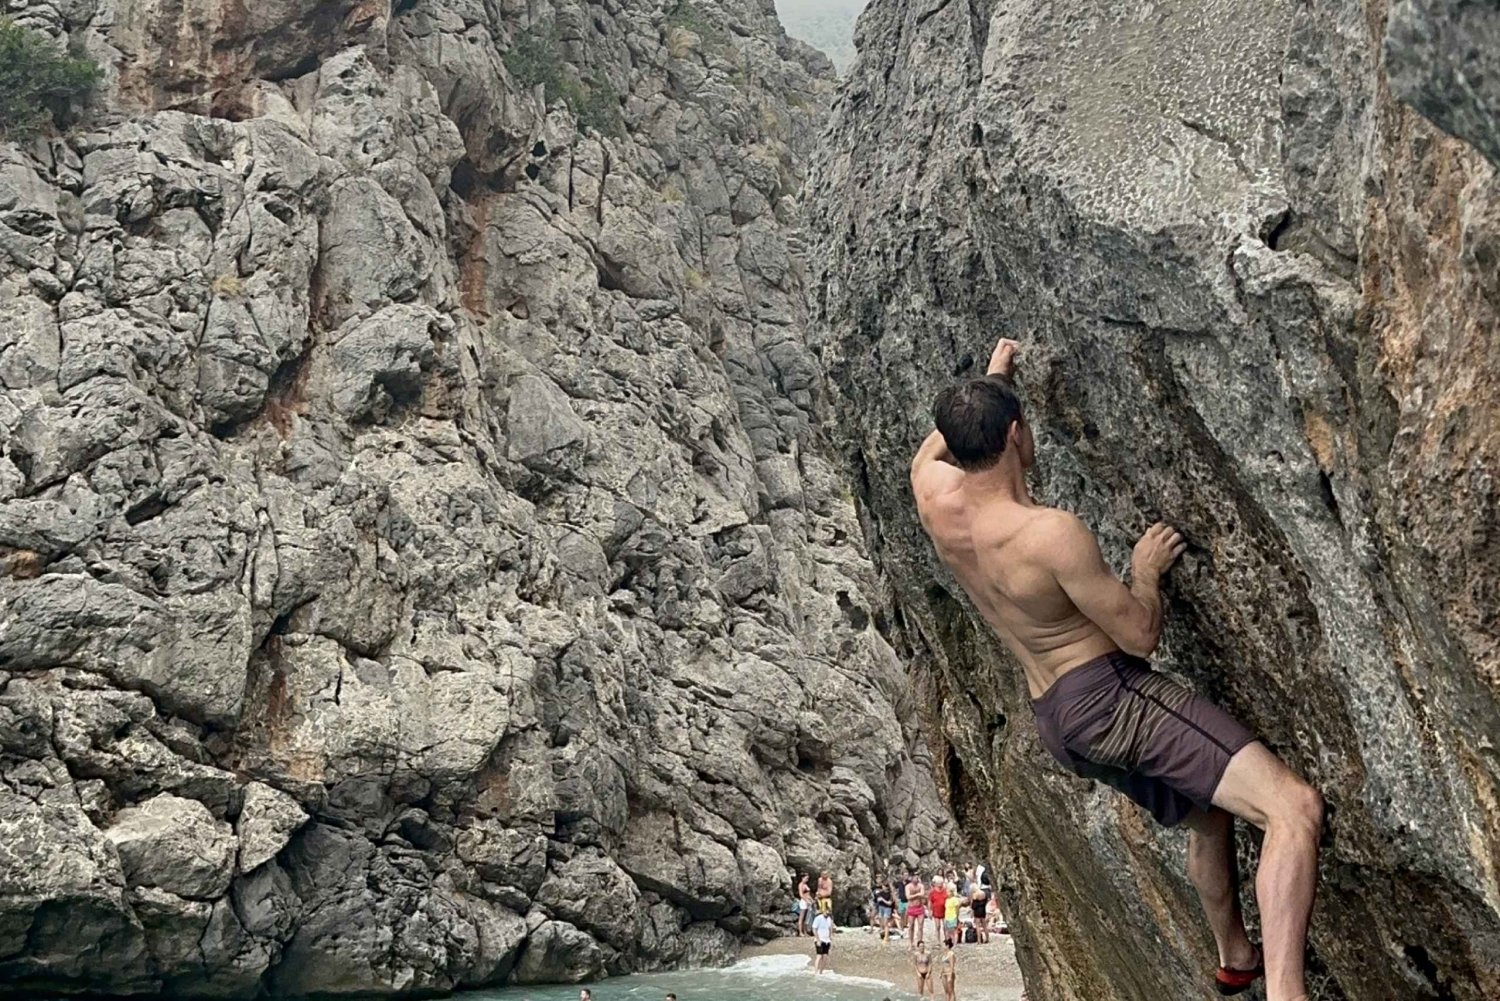 Mallorca, hidden gem to climbing